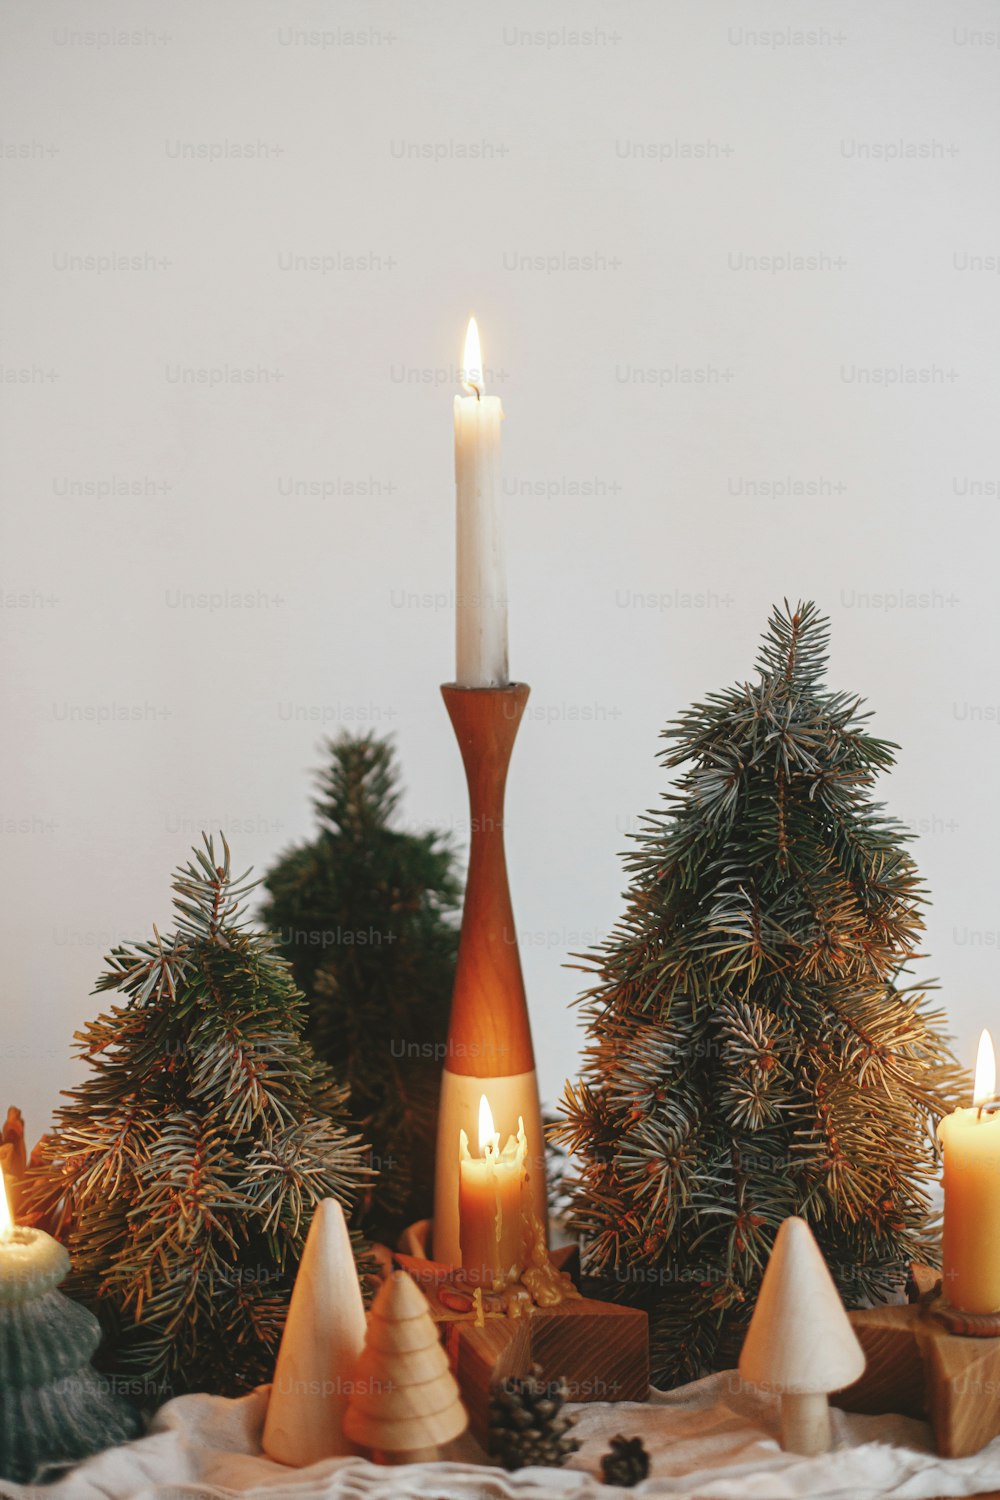 Feiertag Advent. Stilvolle Weihnachtskerzen und Kiefernbäume Dekorationen auf Holztisch auf dem Hintergrund der weißen Wand im modernen skandinavischen Festsaal. Stimmungsvolle Winterzeit.